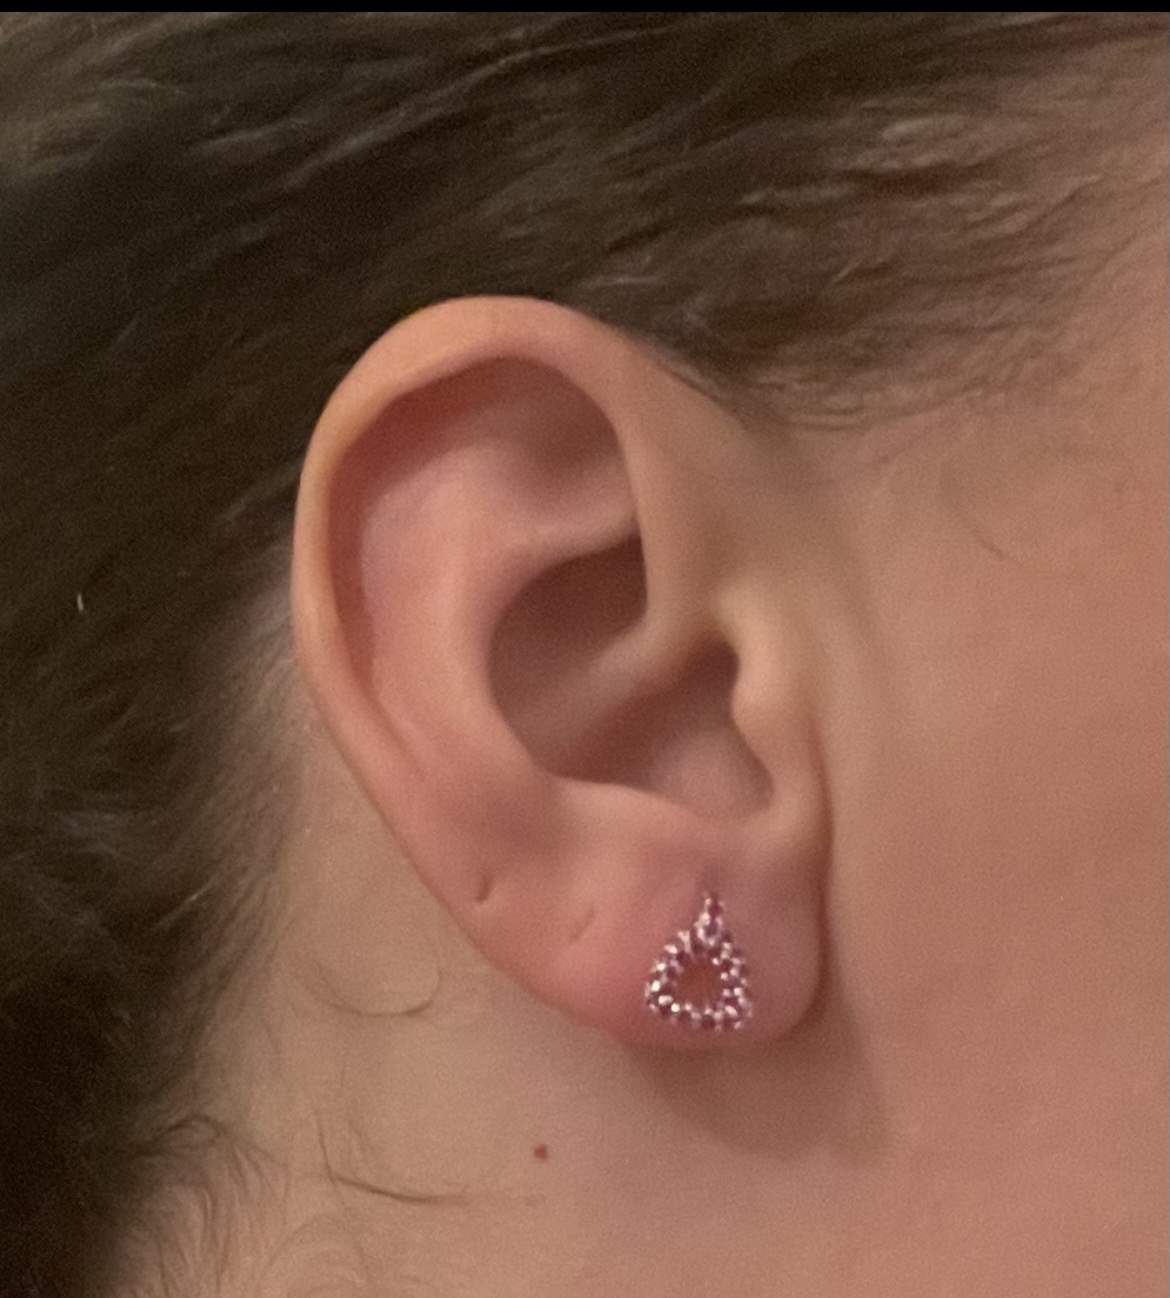 Sleek stirrup stud earrings (set with rubies)